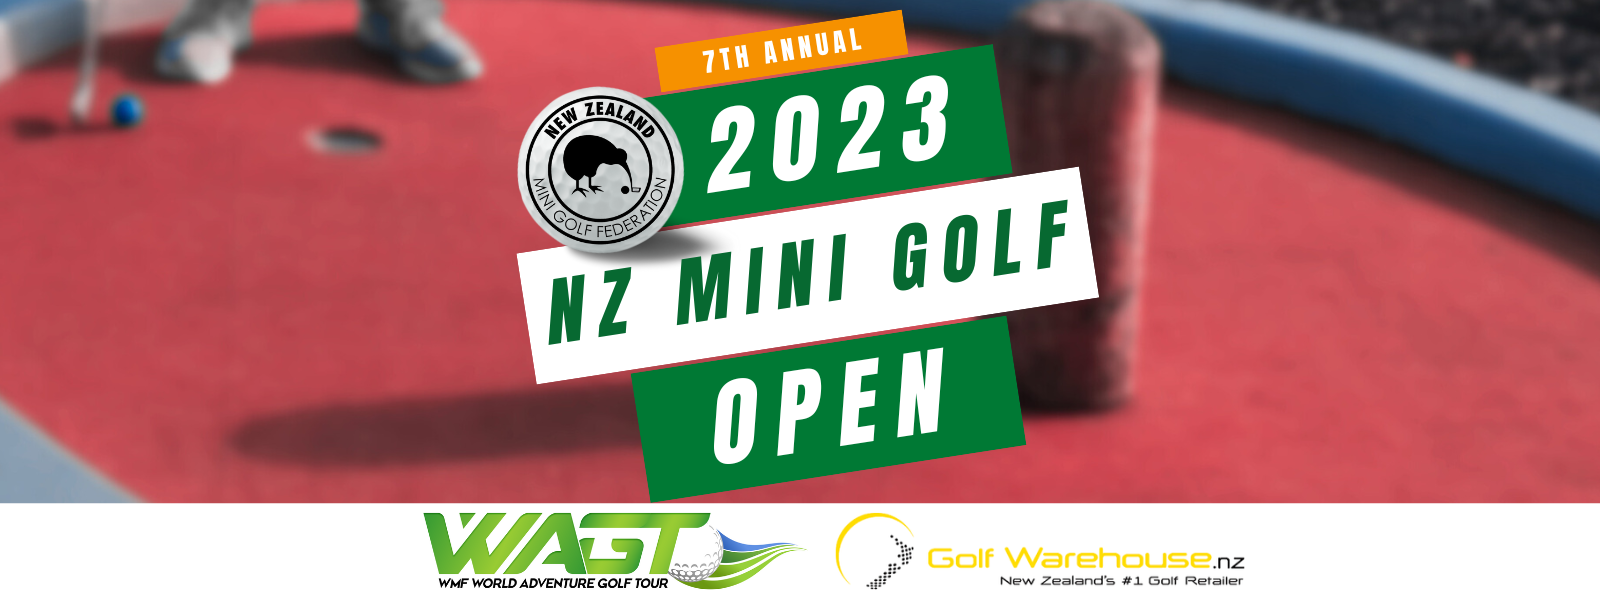 New Zealand Mini Golf Open 2023